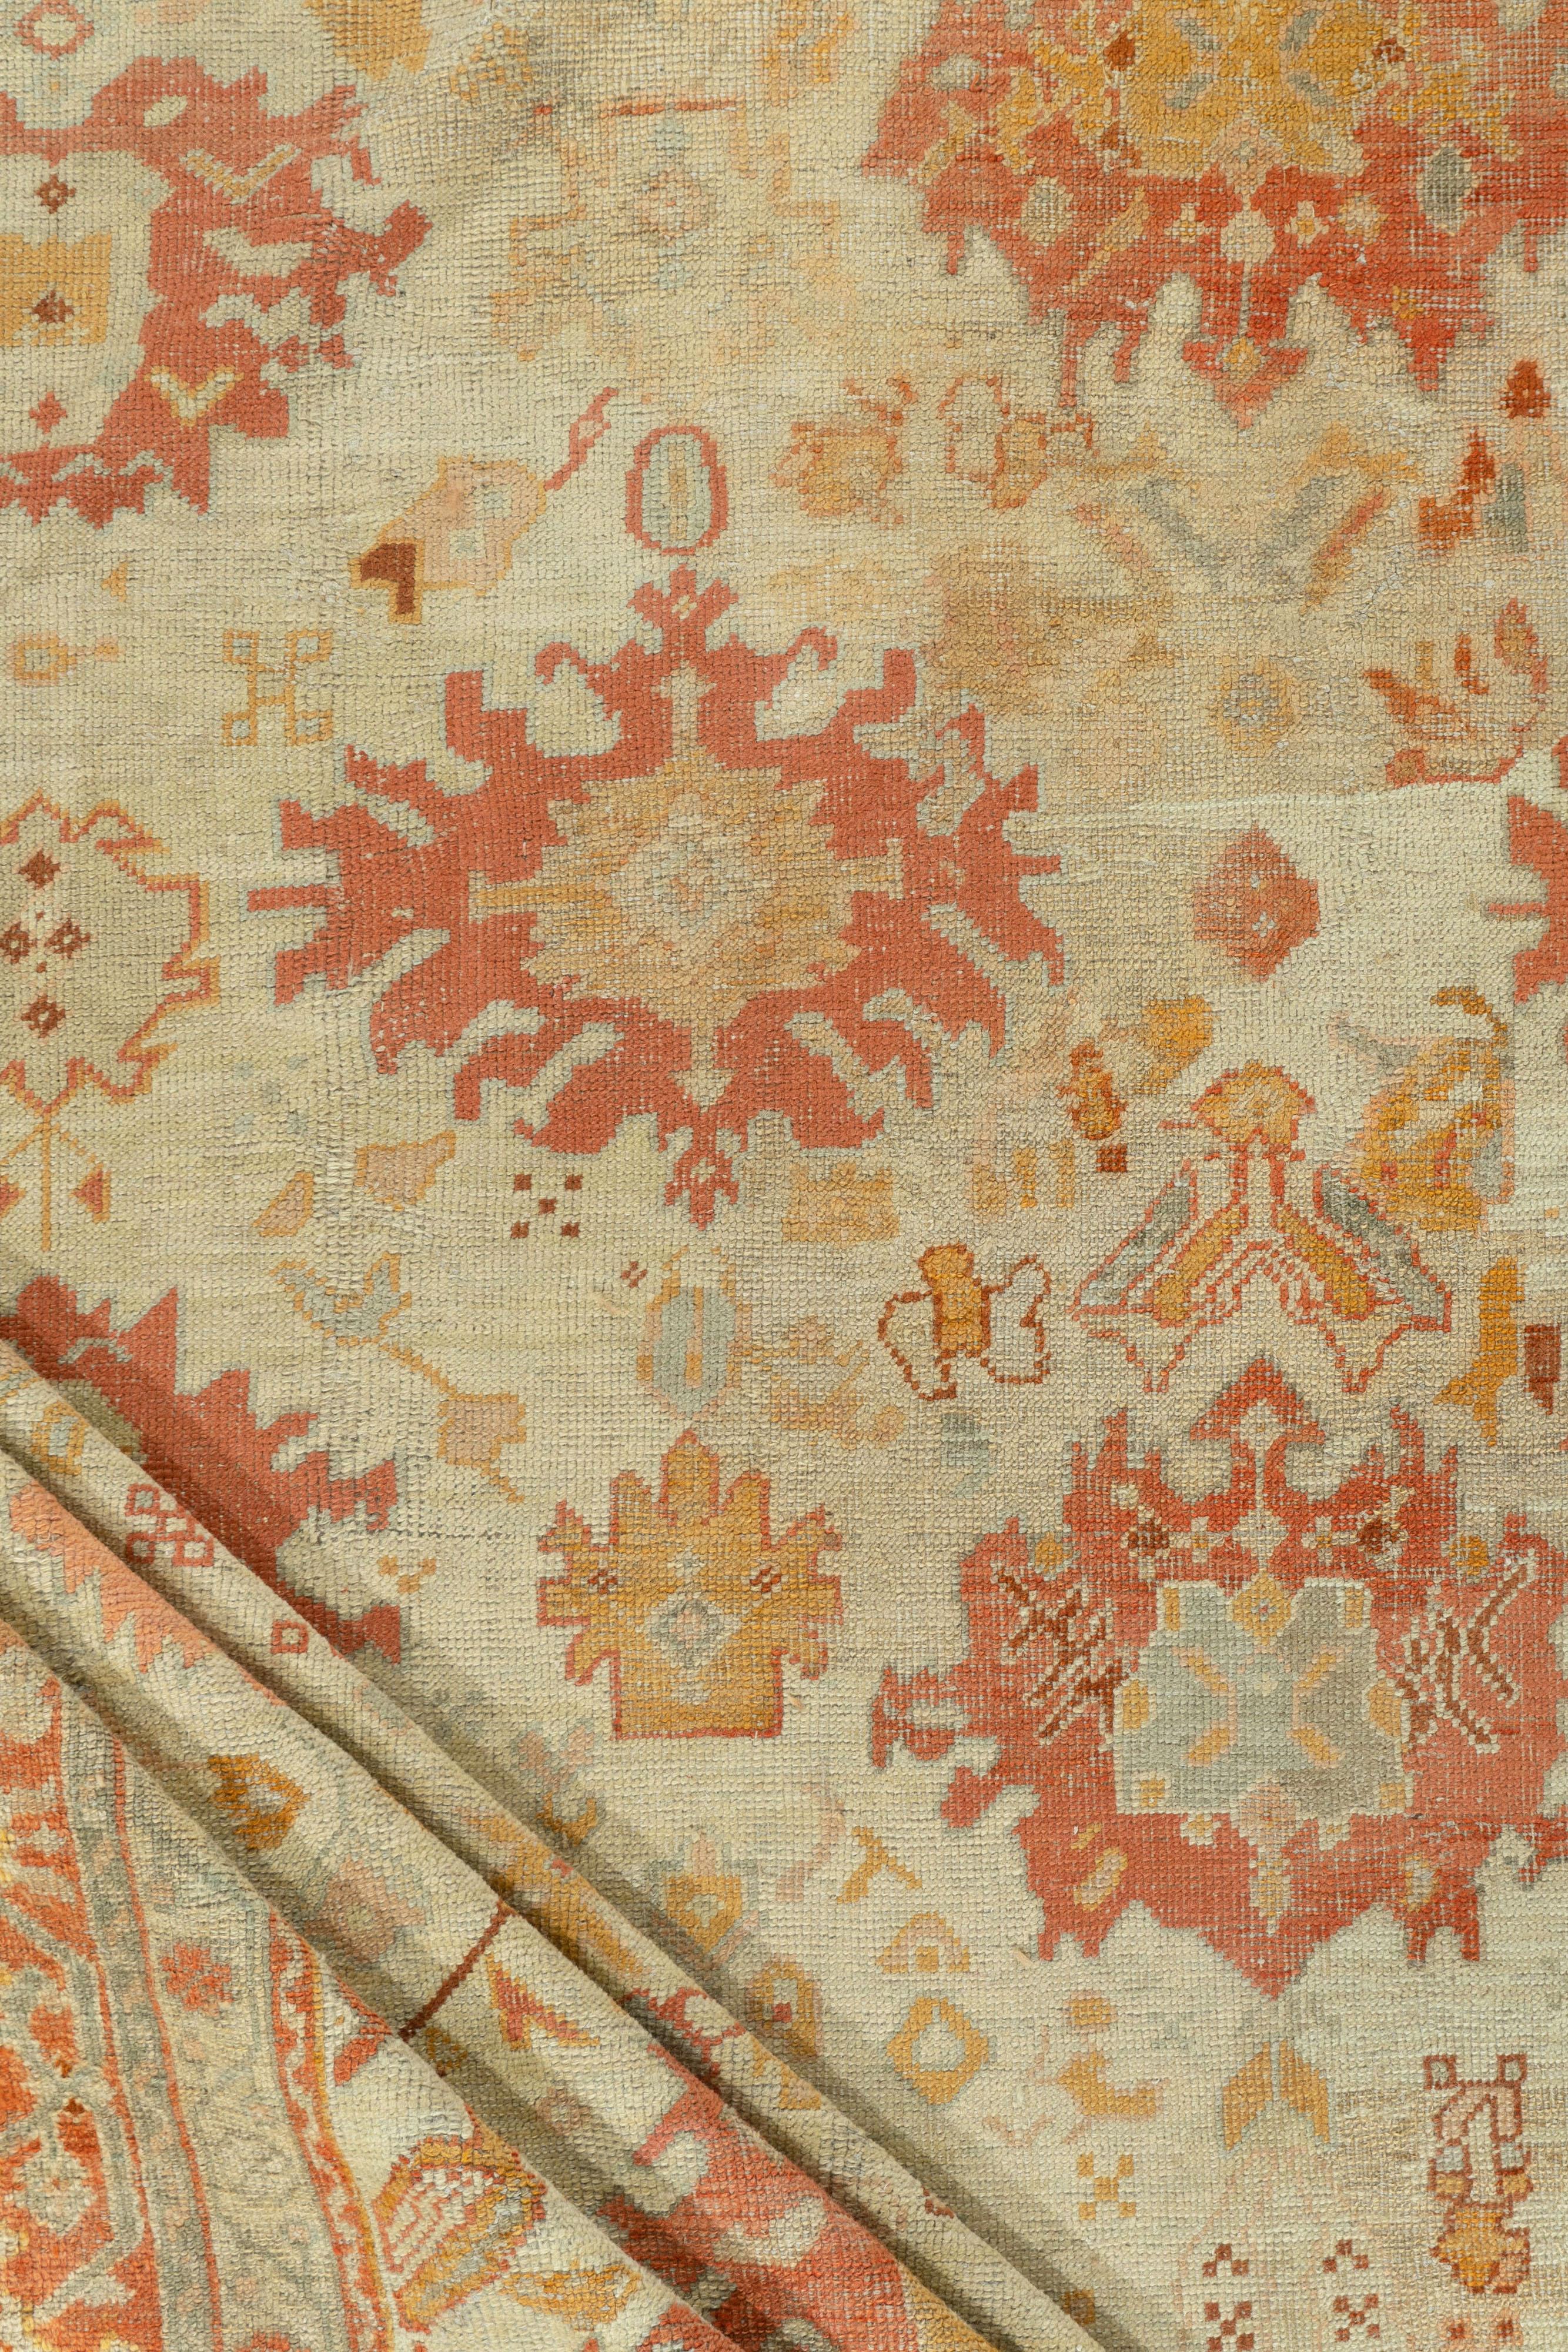 Ancien tapis turc Oushak 13'7 x 17'. Ce tapis de ville tissé à la main présente un motif Harshang éclaté, composé de palmettes flottantes, de losanges, de médaillons déchirés et de palmettes symétriques, le tout sur un fond beige crème, soutenu par